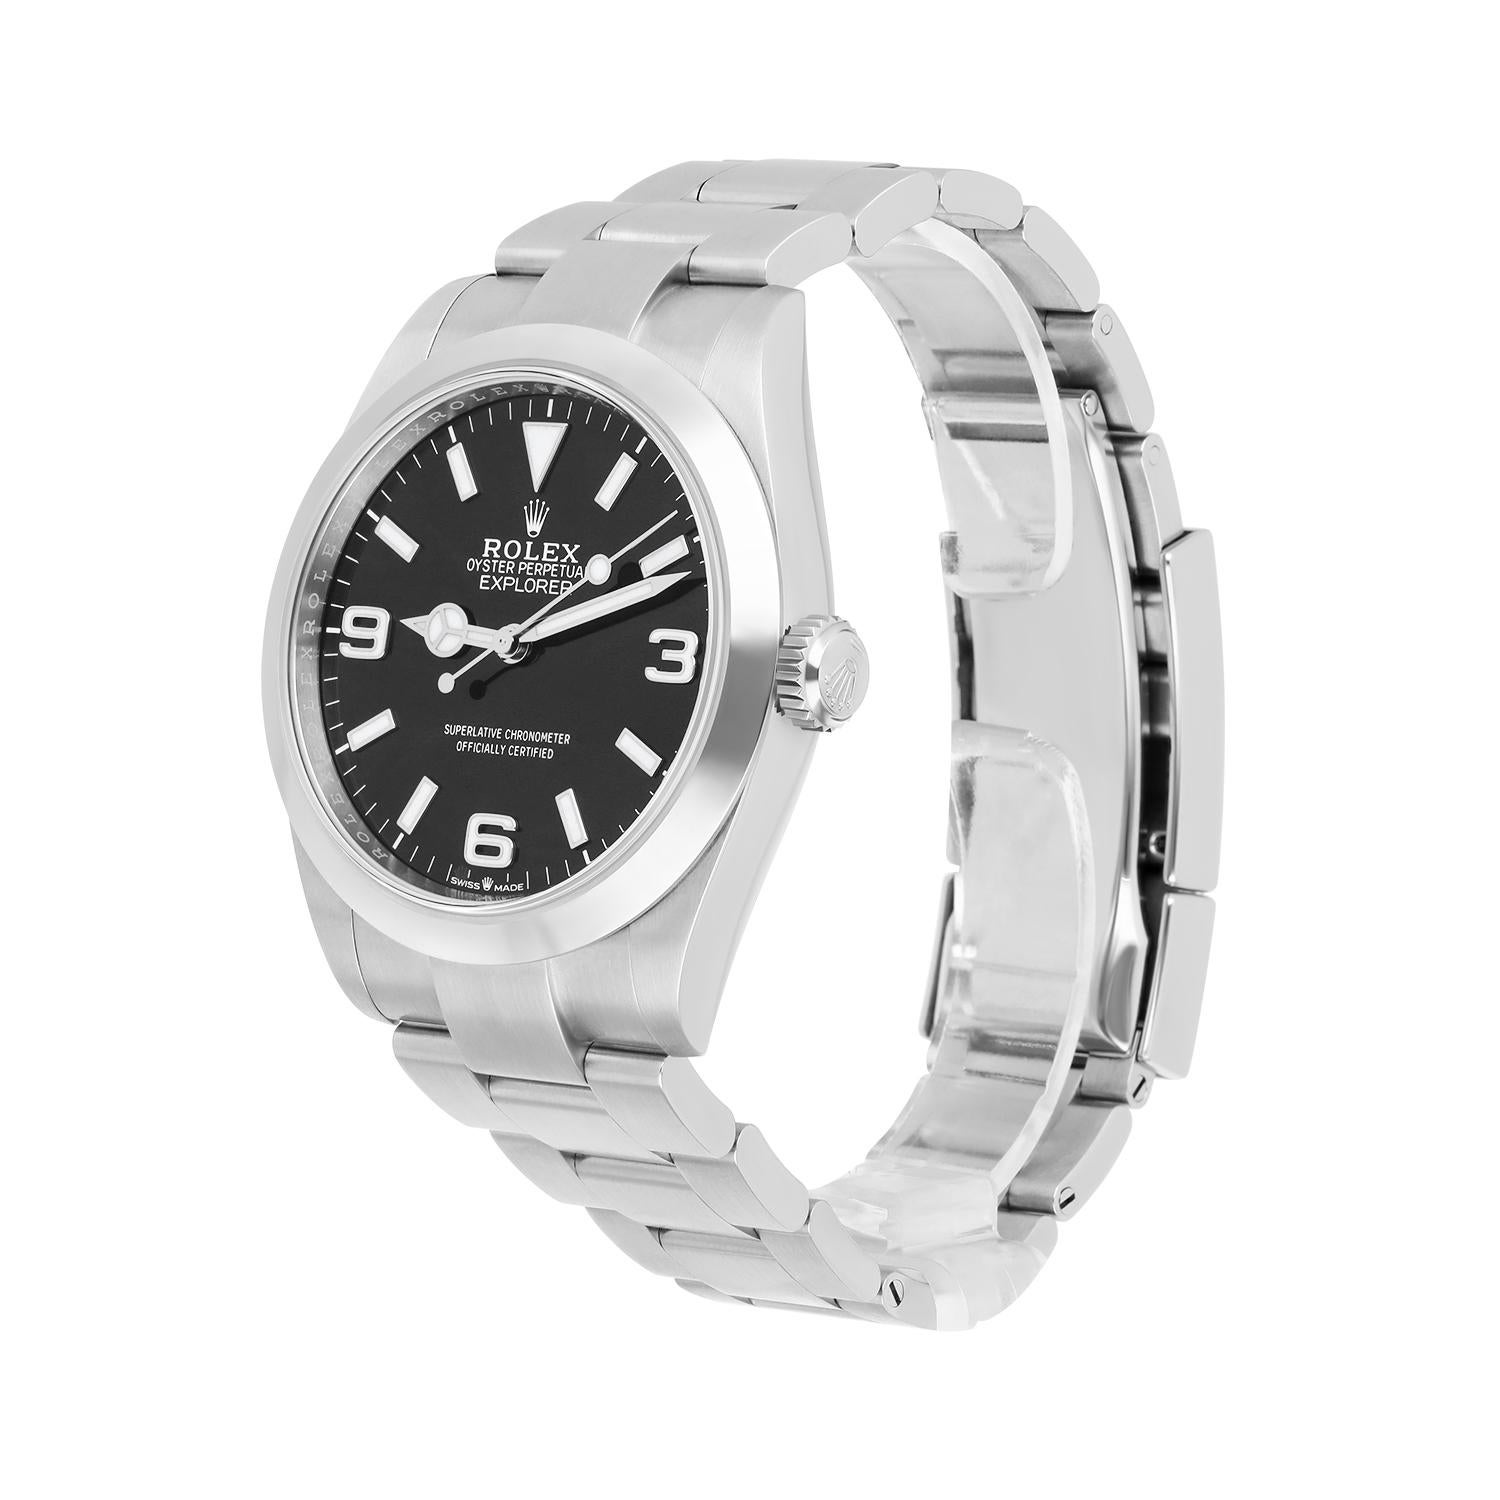 Rolex Explorer Automatic Chronometer Black Dial Men's Watch 224270 Unworn 1